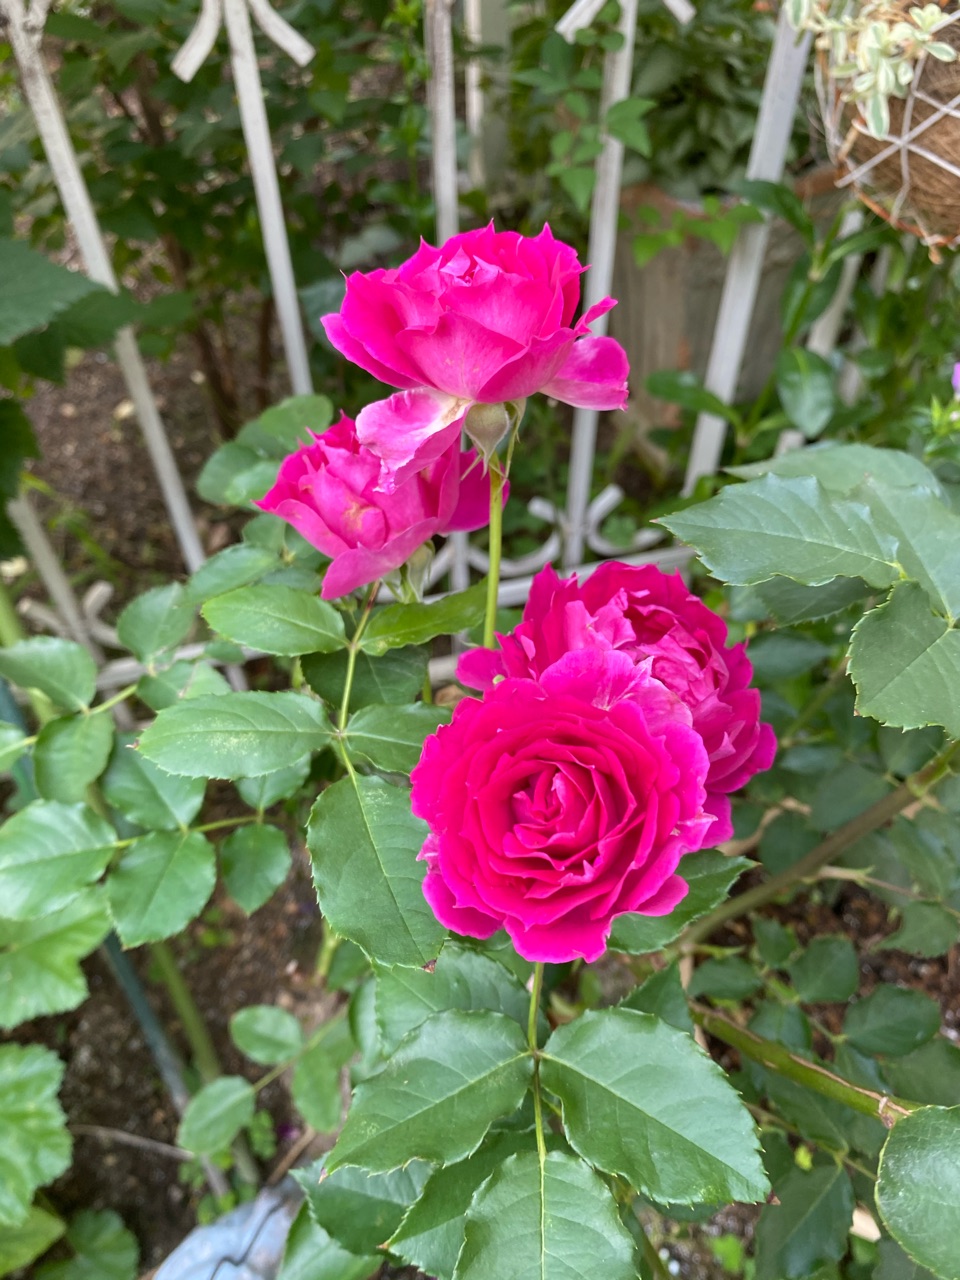 小庭に派手なシェエラザード 挿木の二番花 のばらのガーデニングブログ Hana And Rose Garden Powered By ライブドアブログ